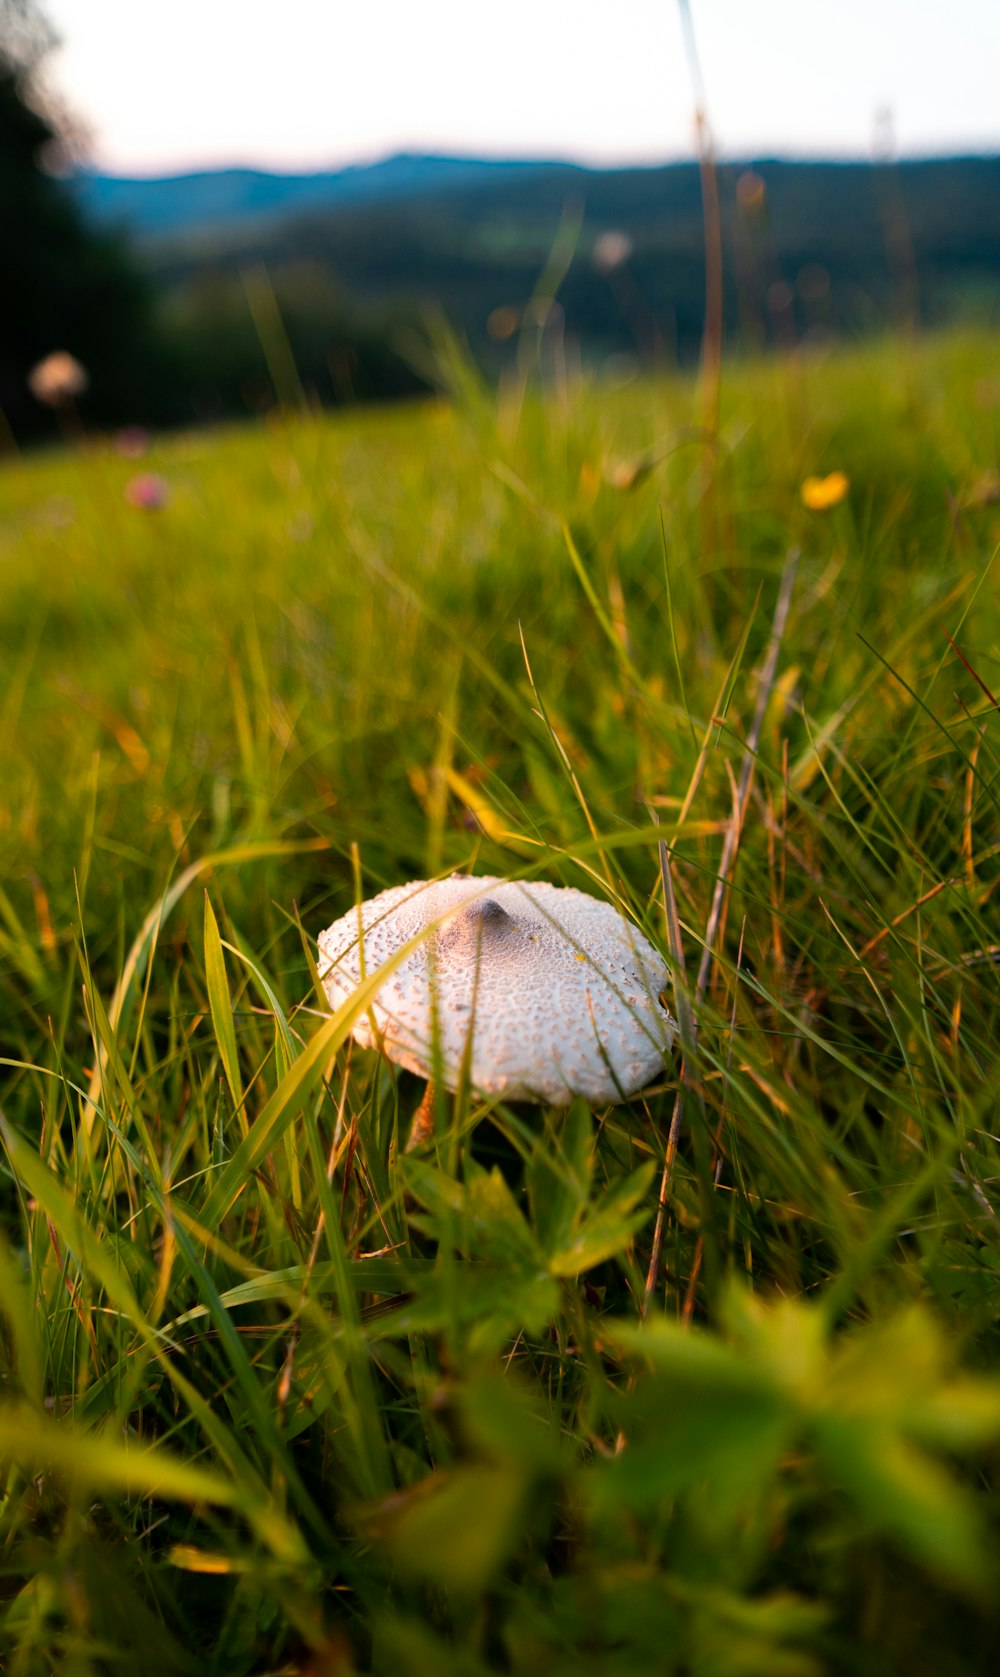 흰 버섯이 풀밭에 앉아있다.